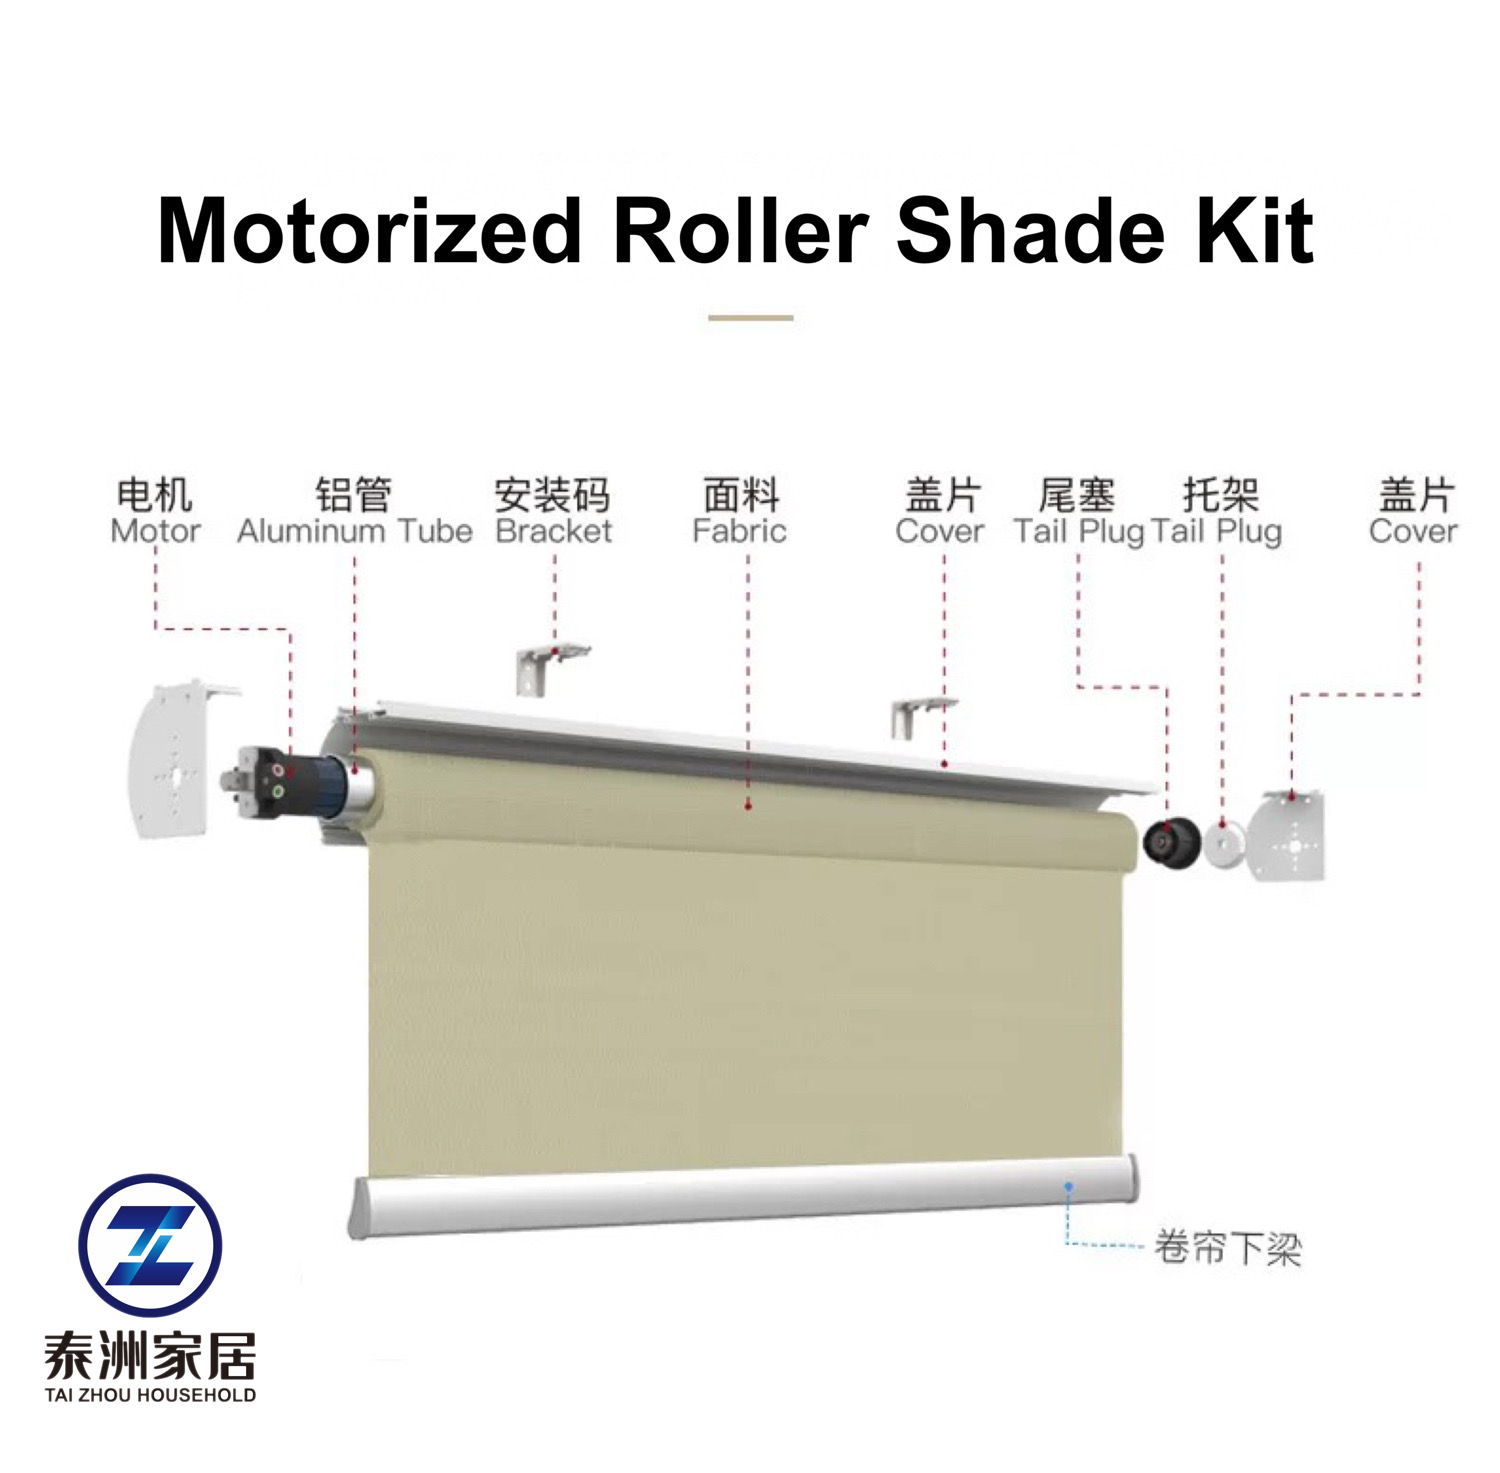 Motorized Roller Shade Kit